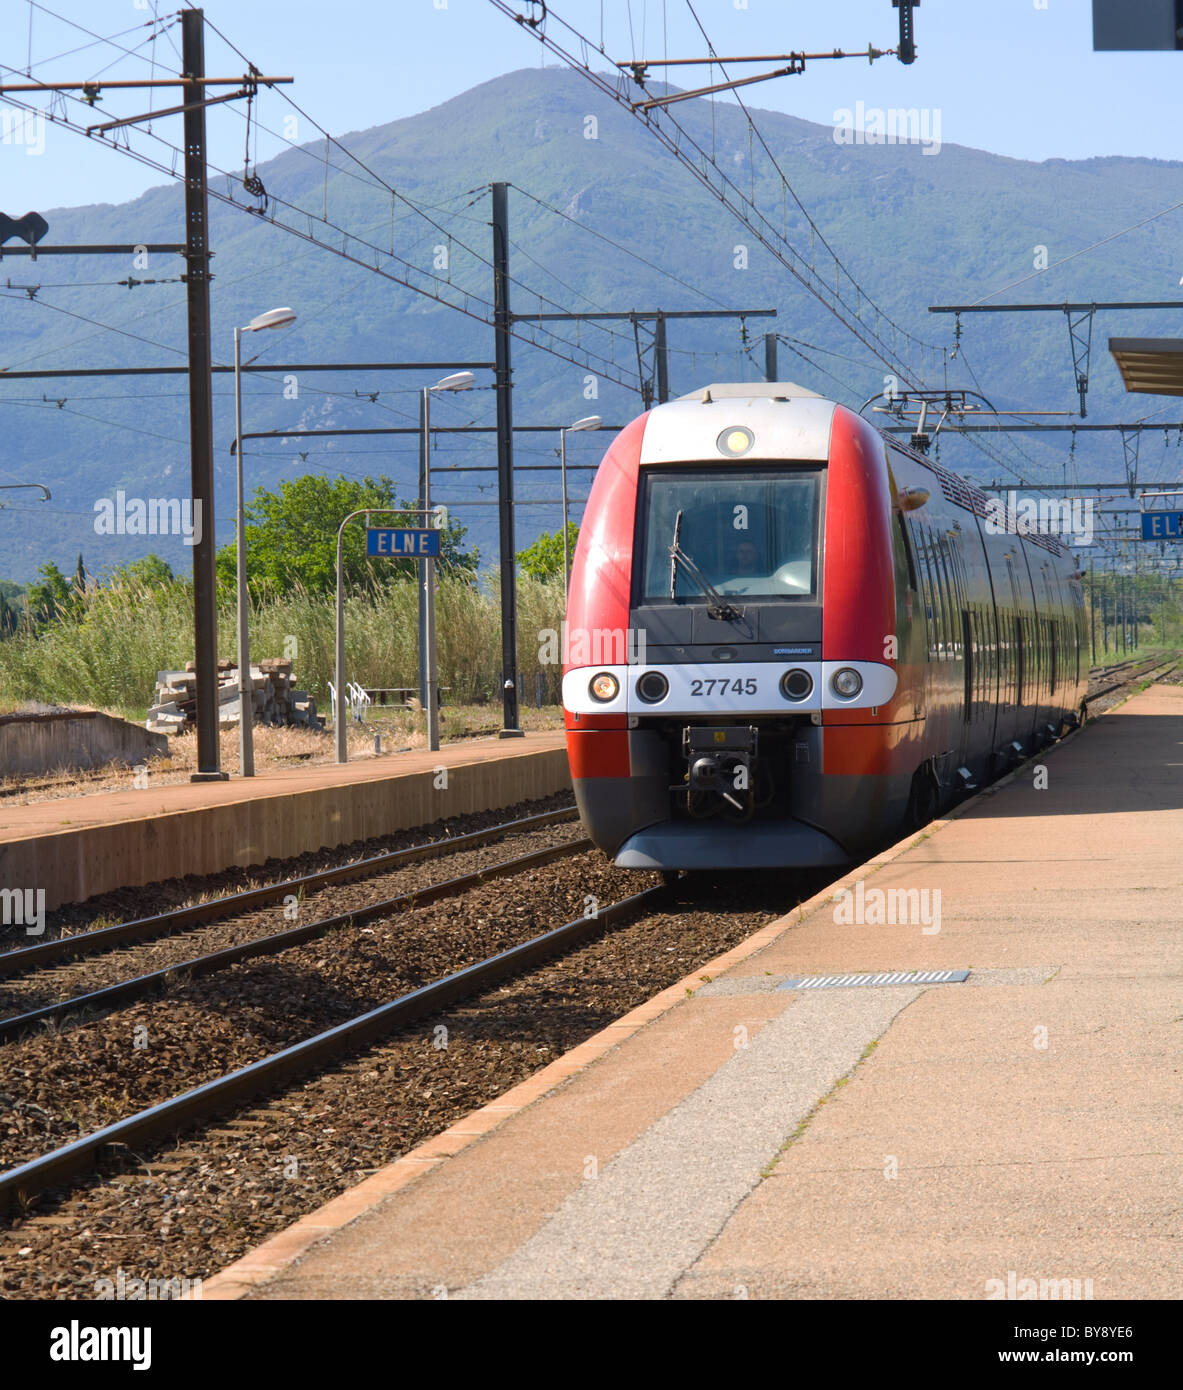 Französische Bahn Elne Station Pyrenäen Orientales Frankreich Stockfoto